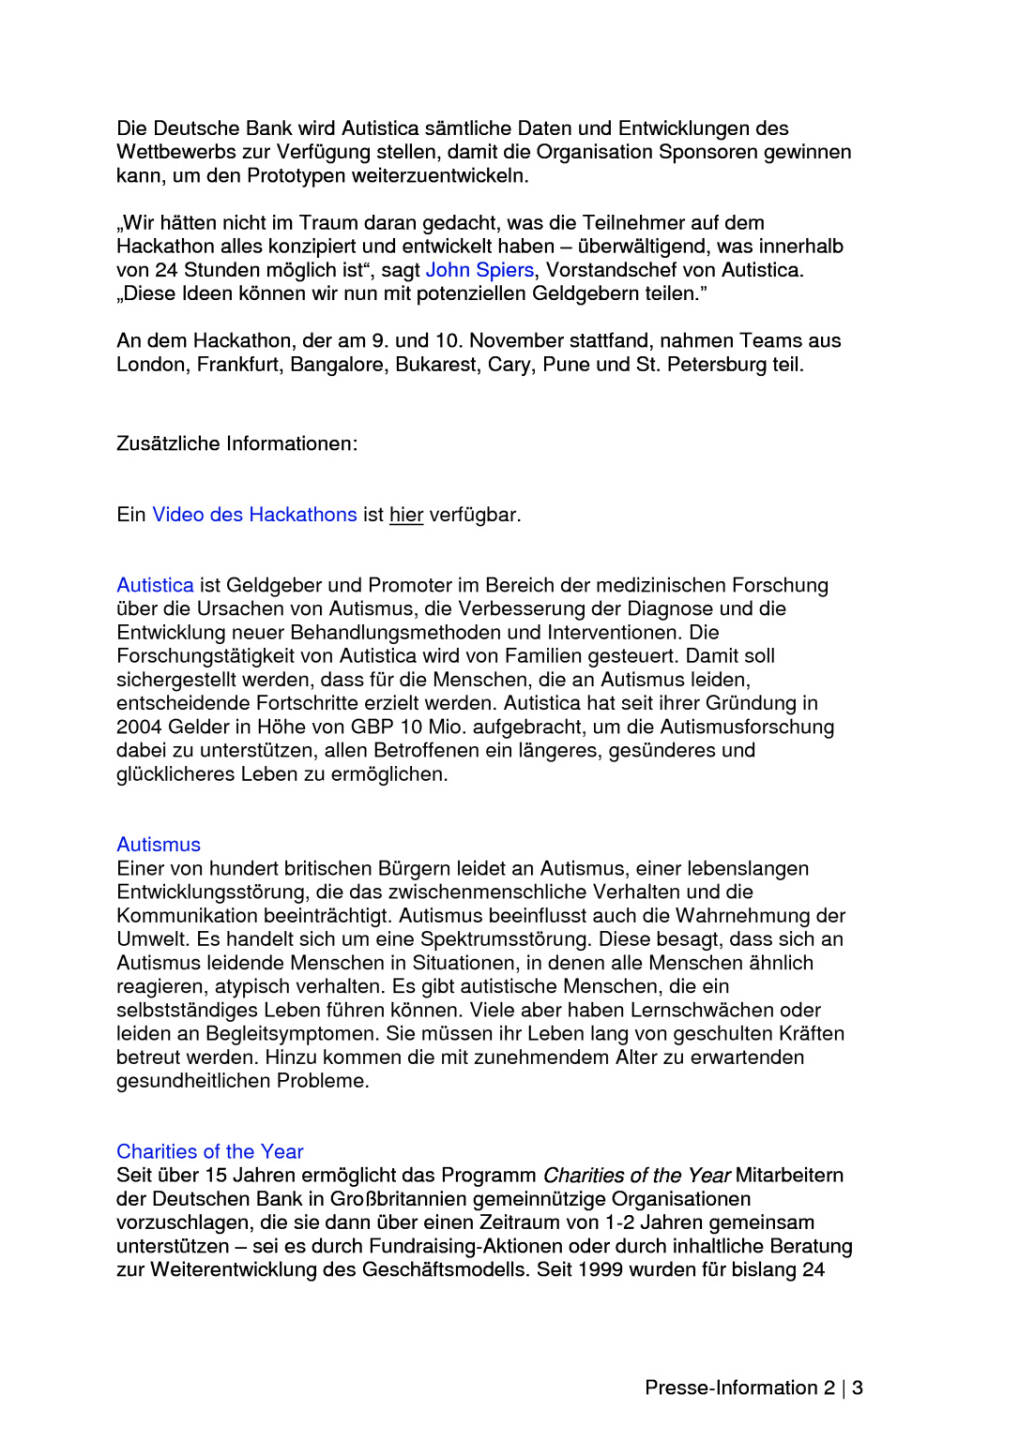 Deutsche Bank mit 24-Stunden-Hackathon-App für Menschen mit Autismus, Seite 2/3, komplettes Dokument unter http://boerse-social.com/static/uploads/file_1978_deutsche_bank_mit_24-stunden-hackathon-app_fur_menschen_mit_autismus.pdf